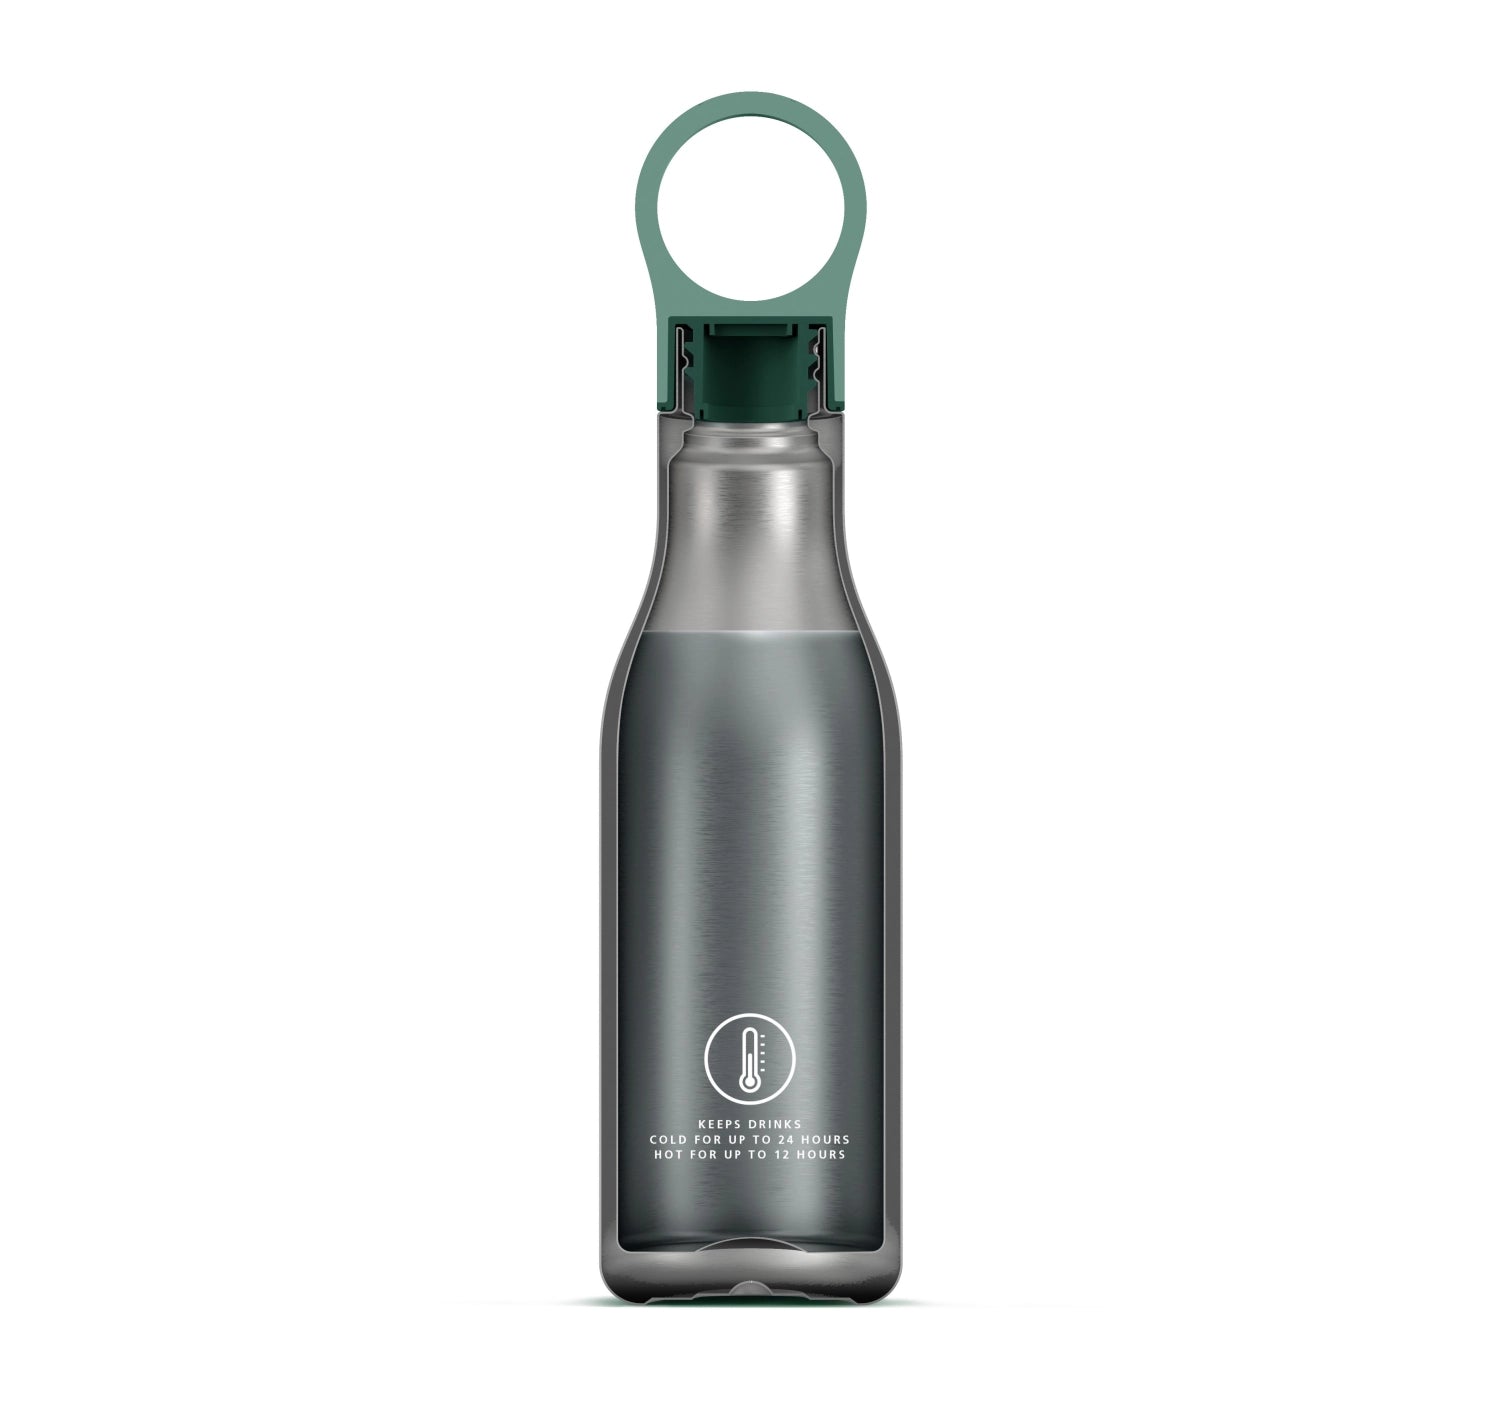 Loop Wasserflasche 500ml, grün - KAQTU Design